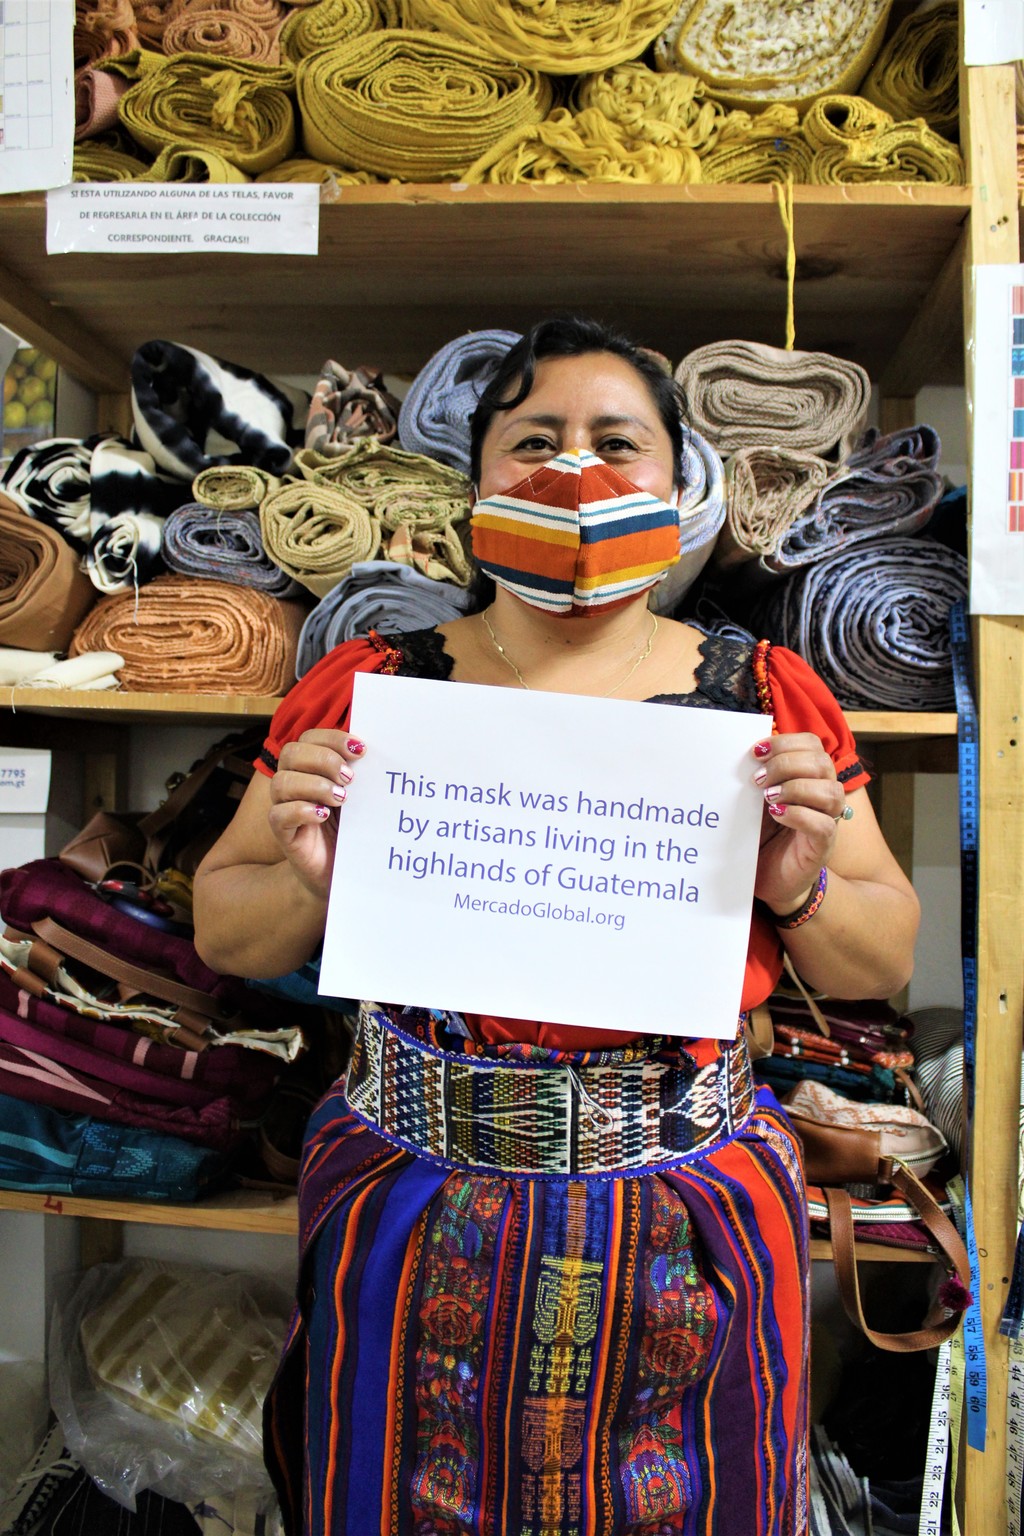 MENSAJE. Comunidades guatemaltecas se unen para los
afectados por Covid-19. (CORTESÍA / Mercado Global)